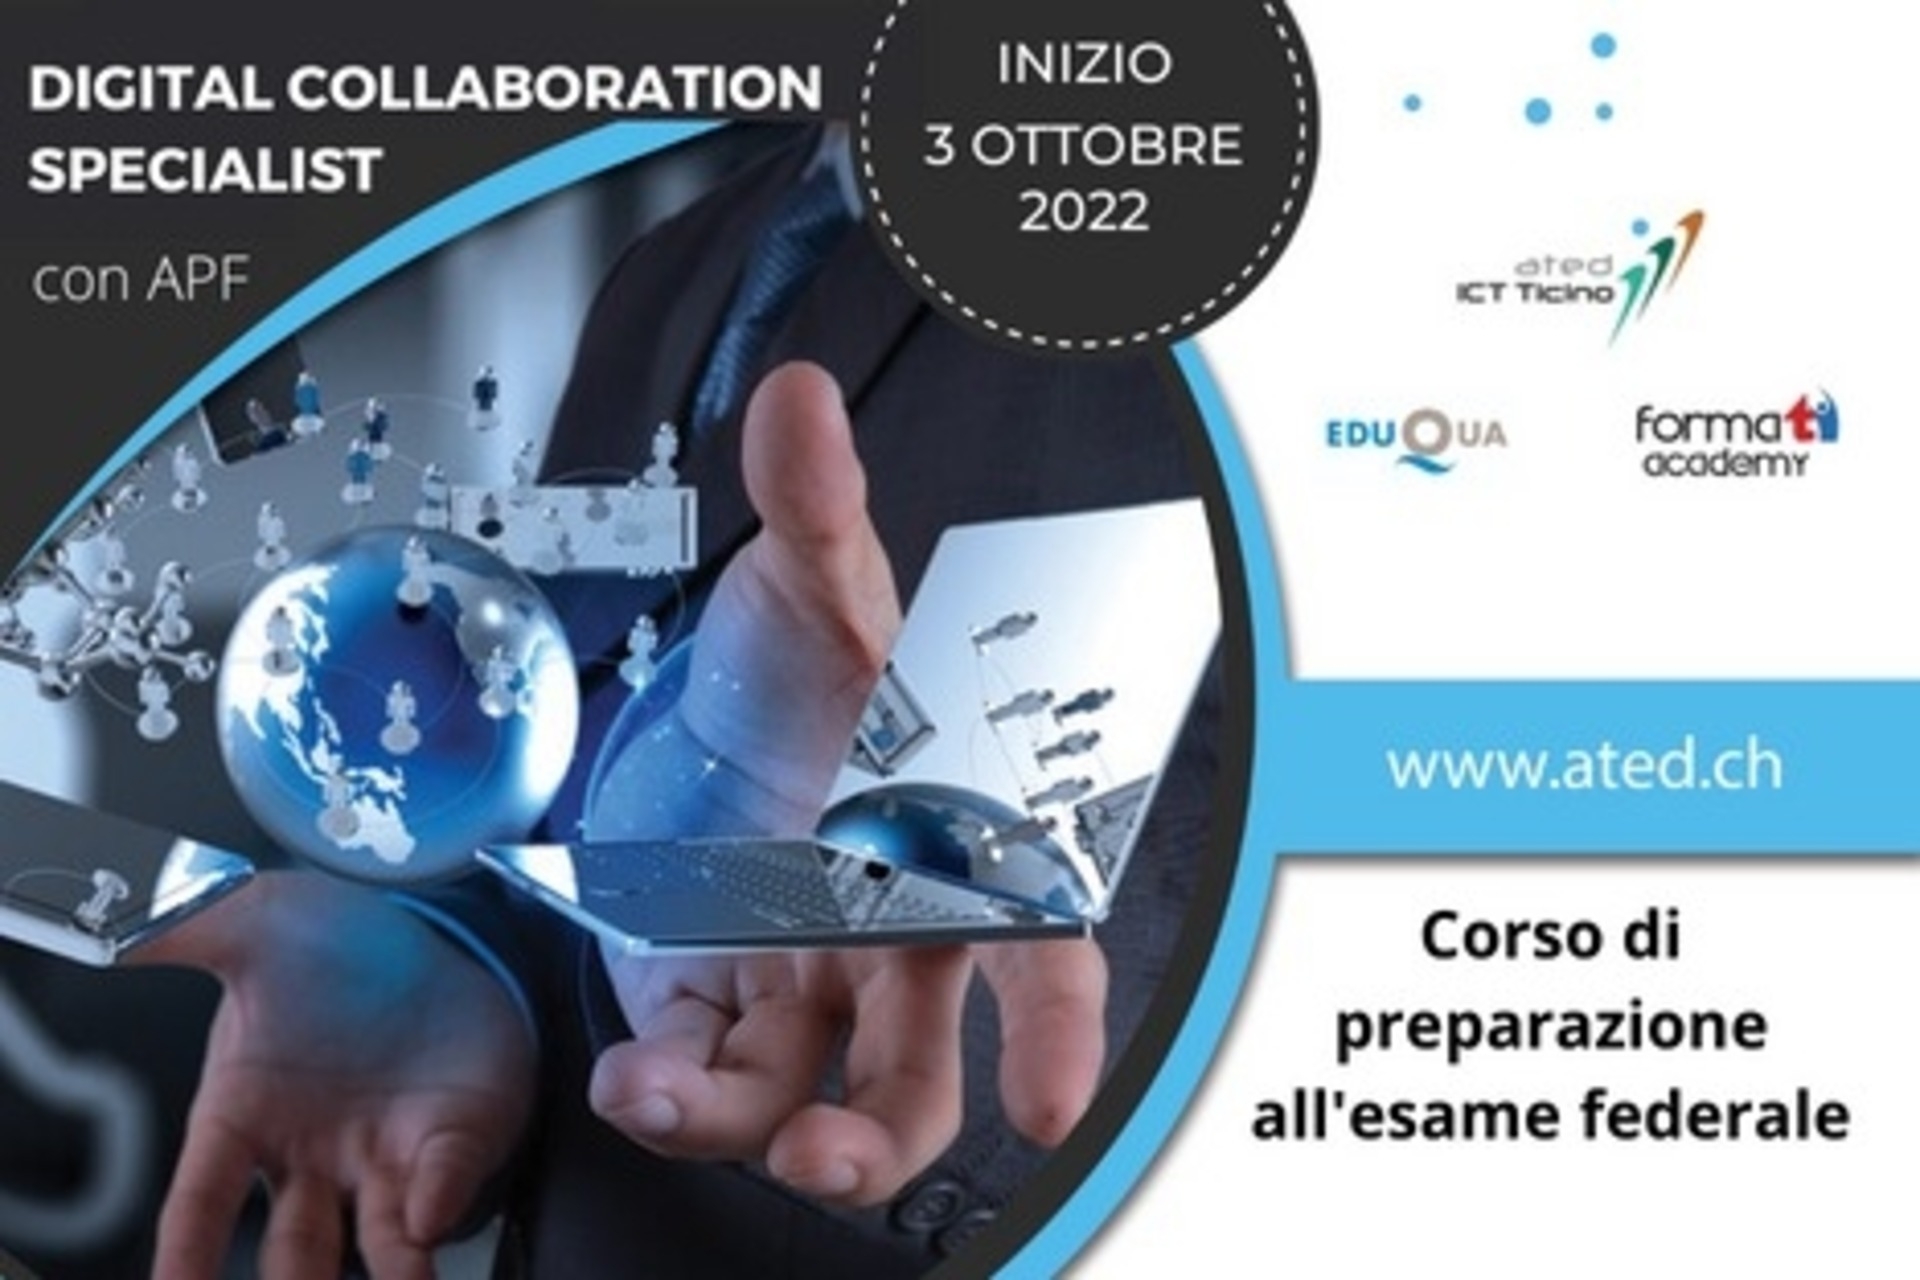 Το βασικό οπτικό φυλλάδιο του μαθήματος για "Digital Collaboration Specialist with Federal Professional Certificate" του ated-ICT Ticino